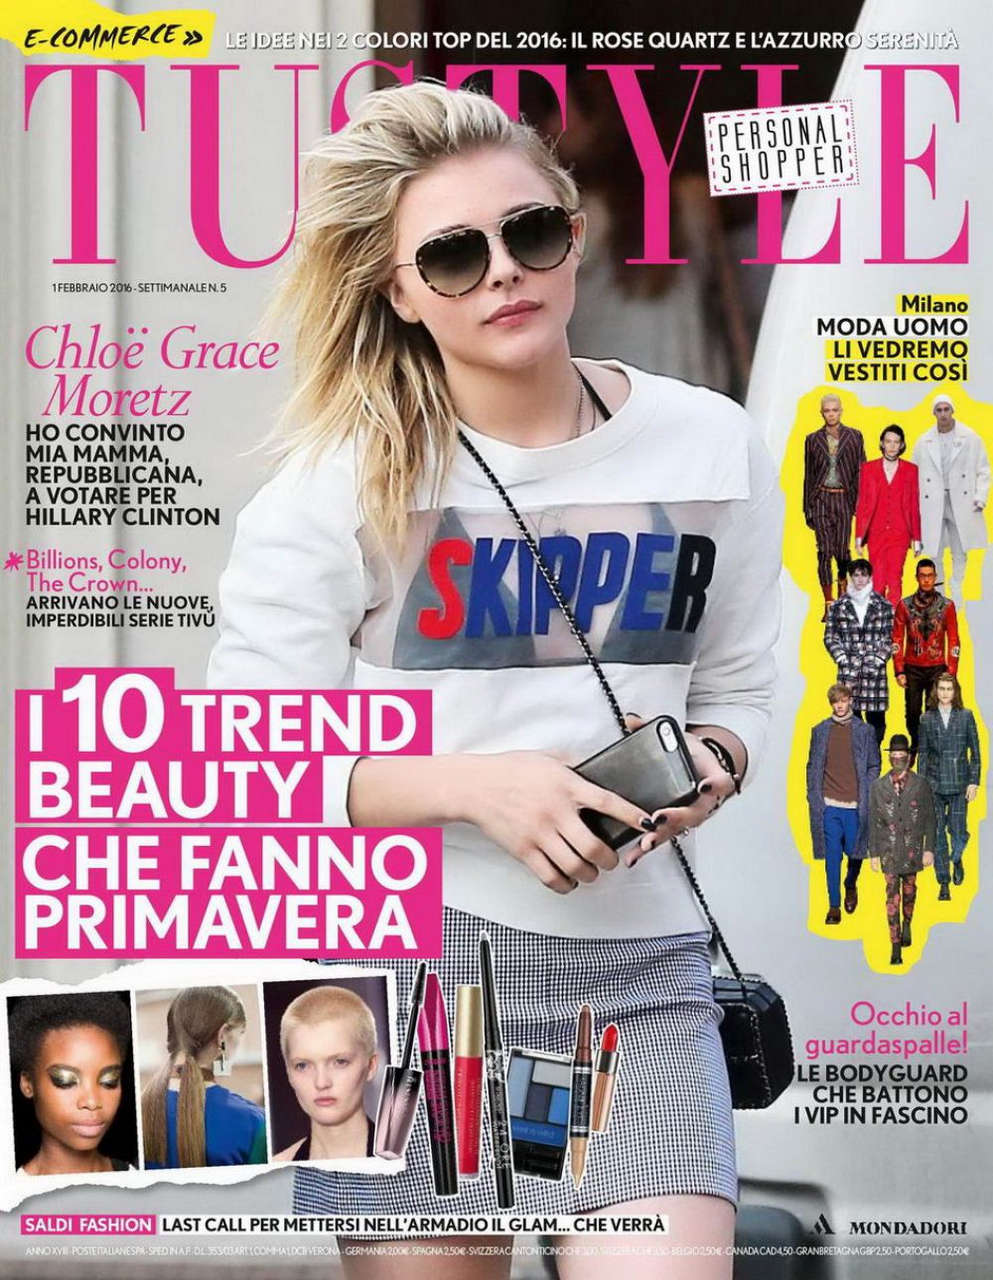 Chloe Moretz Tustyle Magazine February 2016 Issue